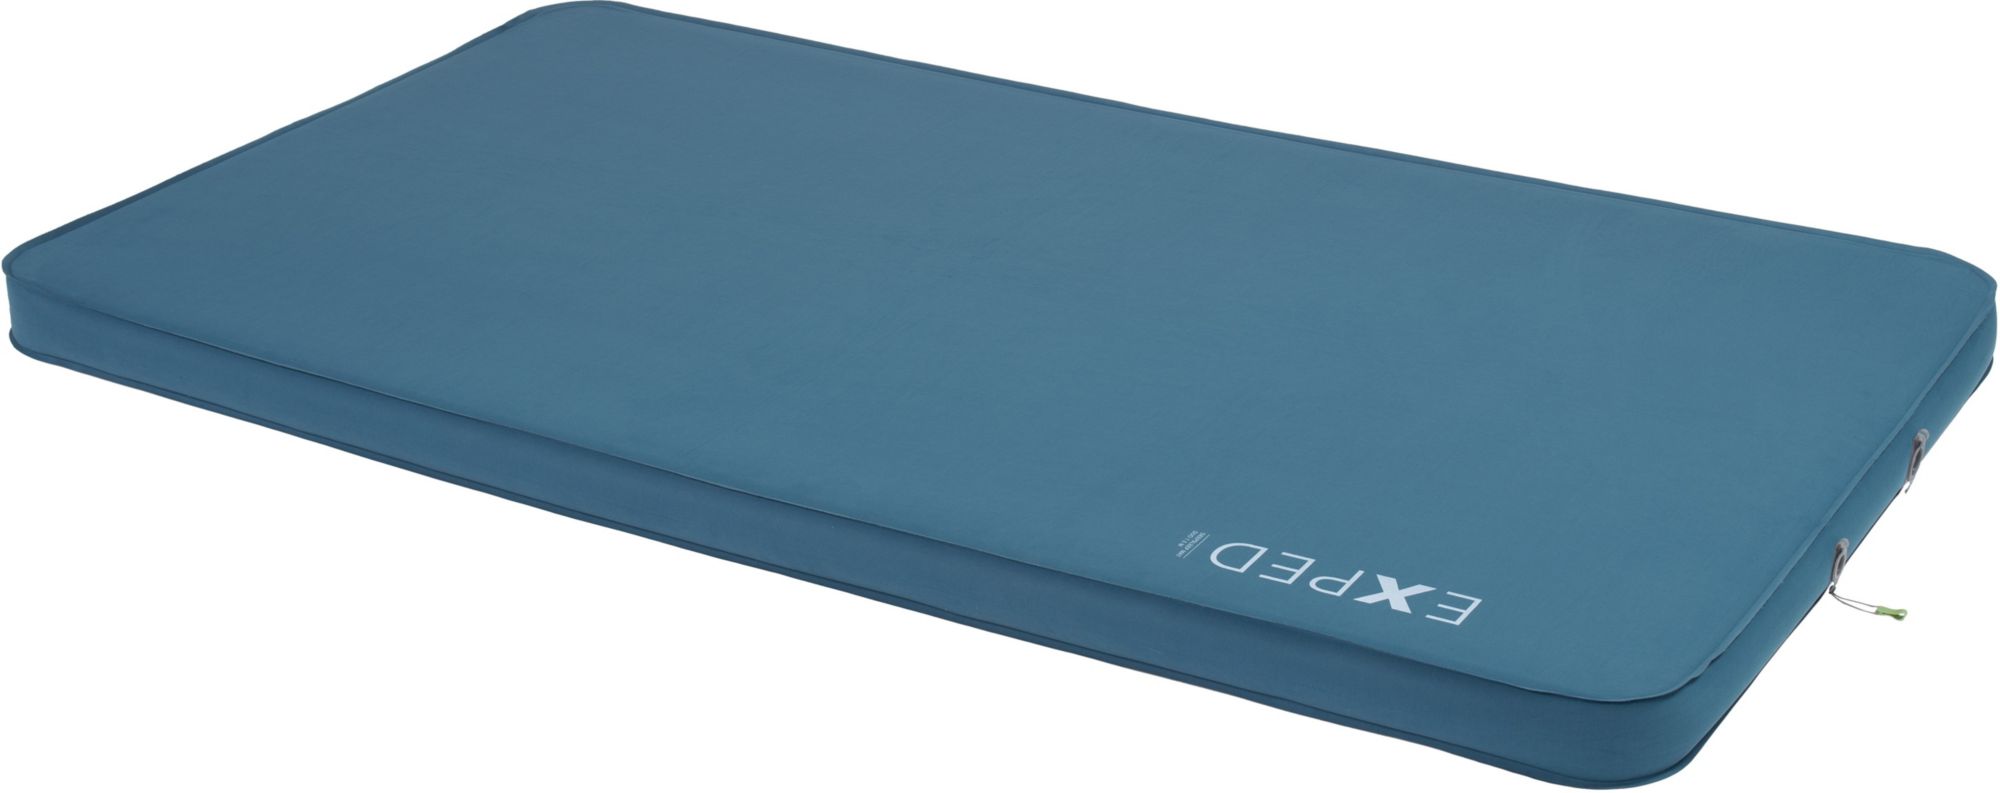 Photos - Bed Linen Exped DeepSleep Duo 3 in. Sleeping Mat, Medium, Blue 21EXPUDPSLPD75MXXCSL 